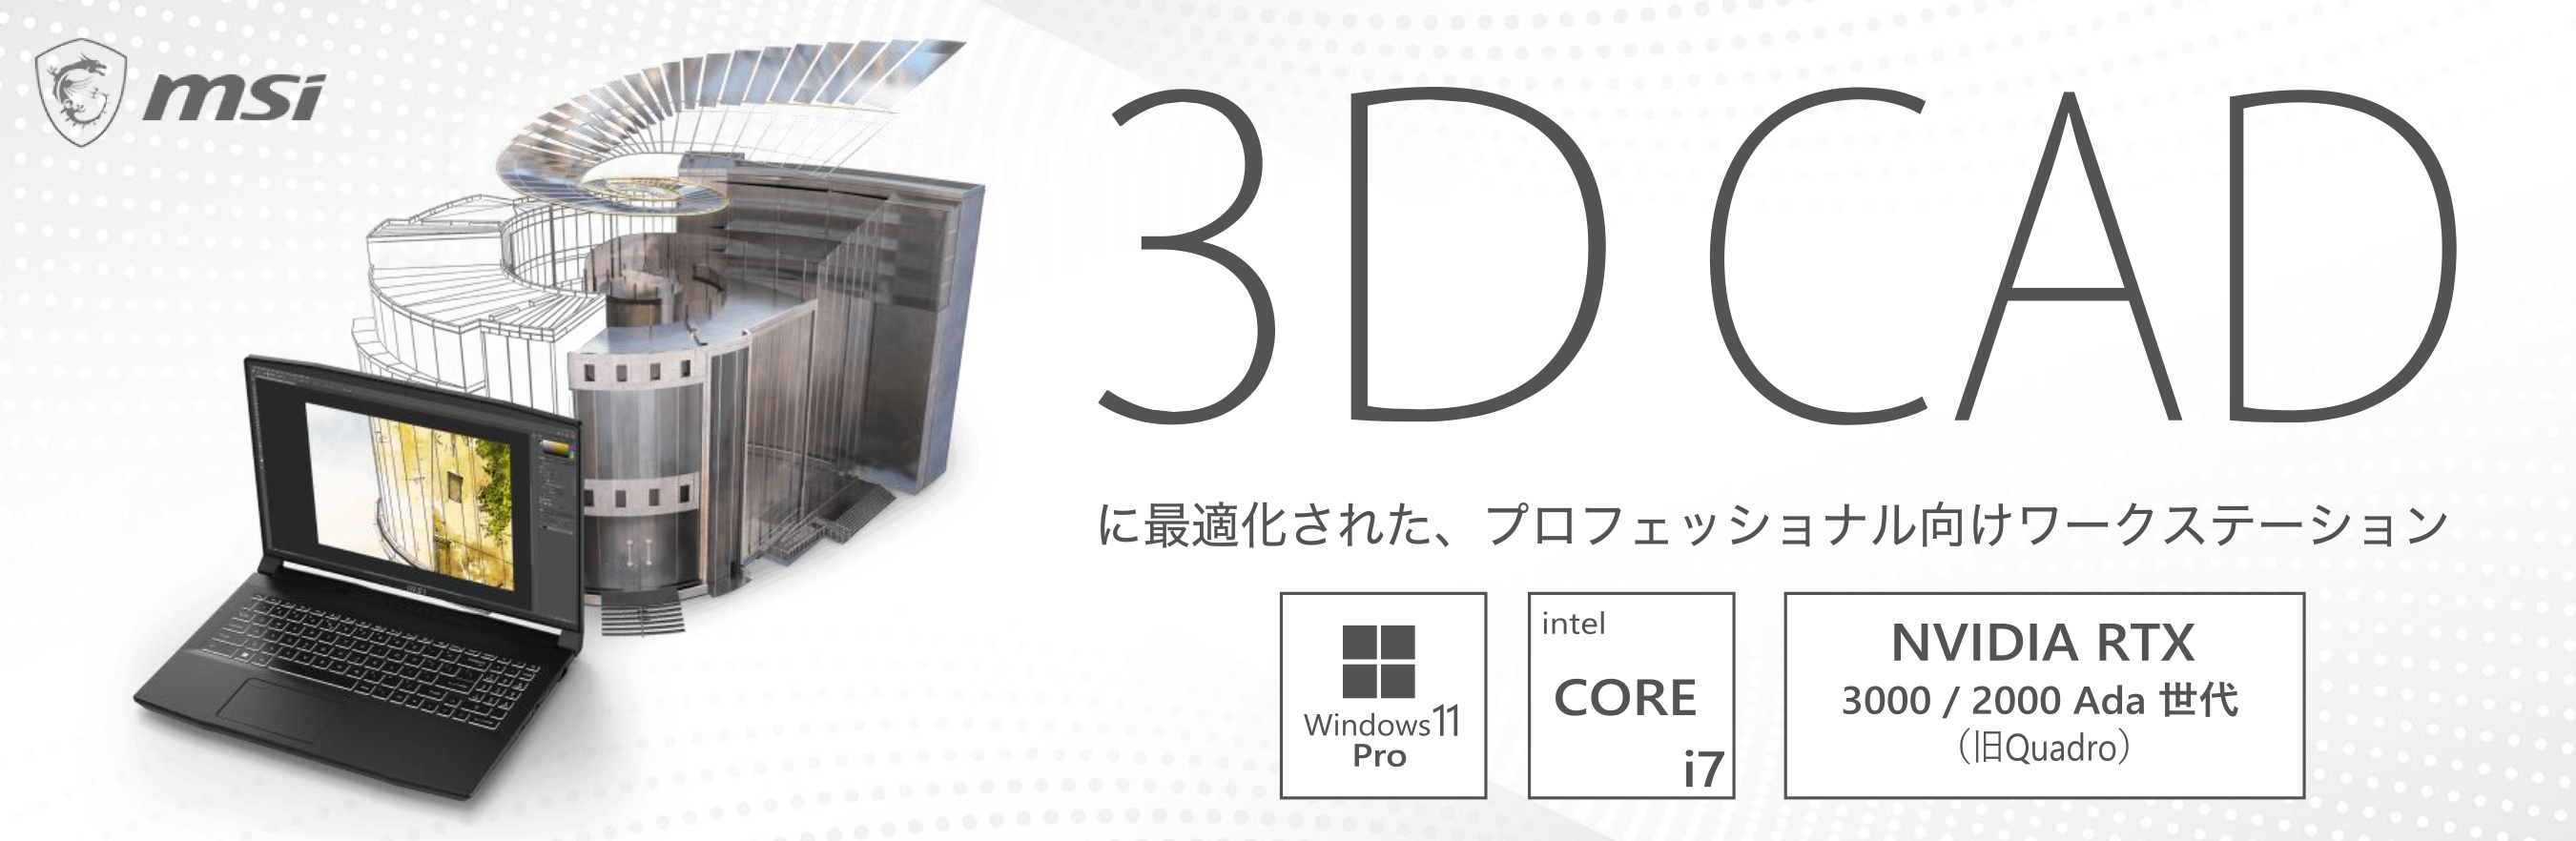 3D-CAD-MSI